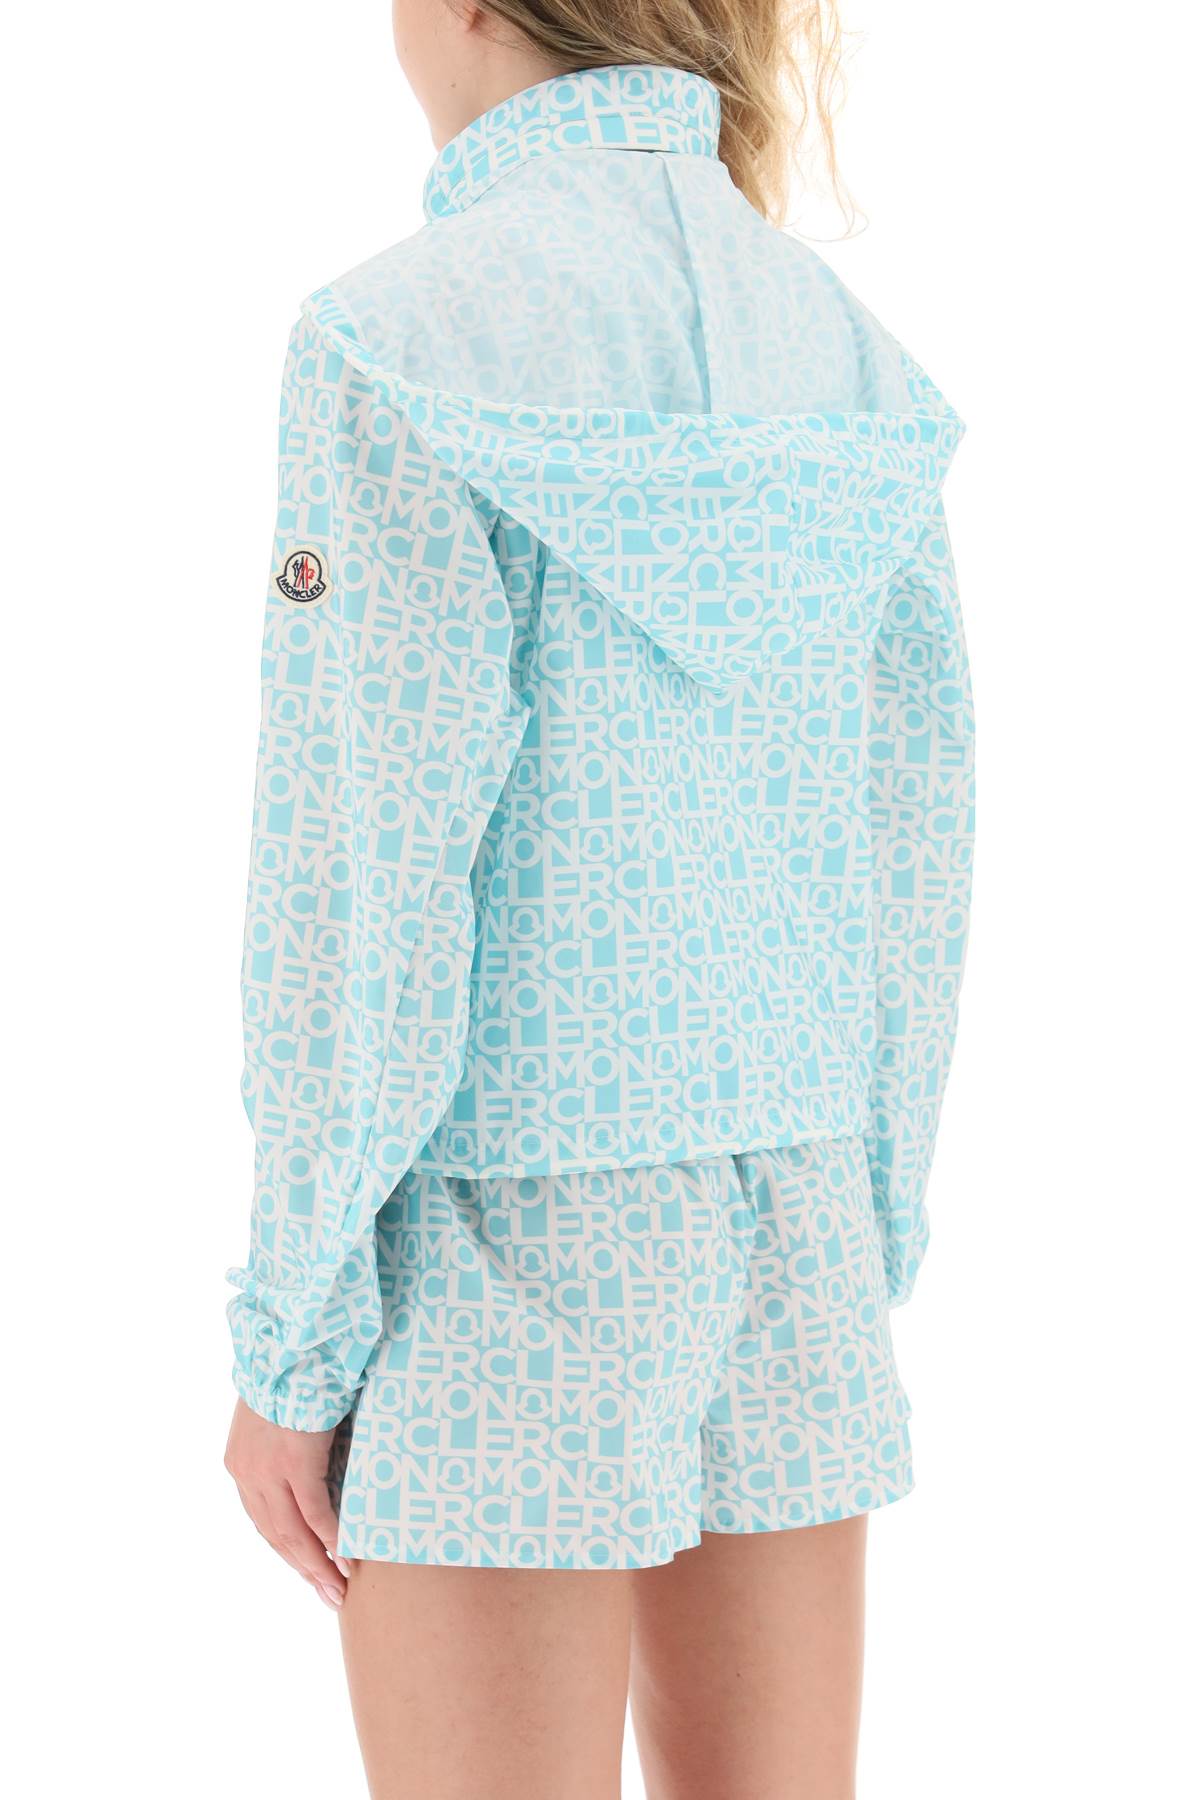 Áo khoác Alose nylon xanh nhạt với họa tiết logo Moncler dành cho phụ nữ